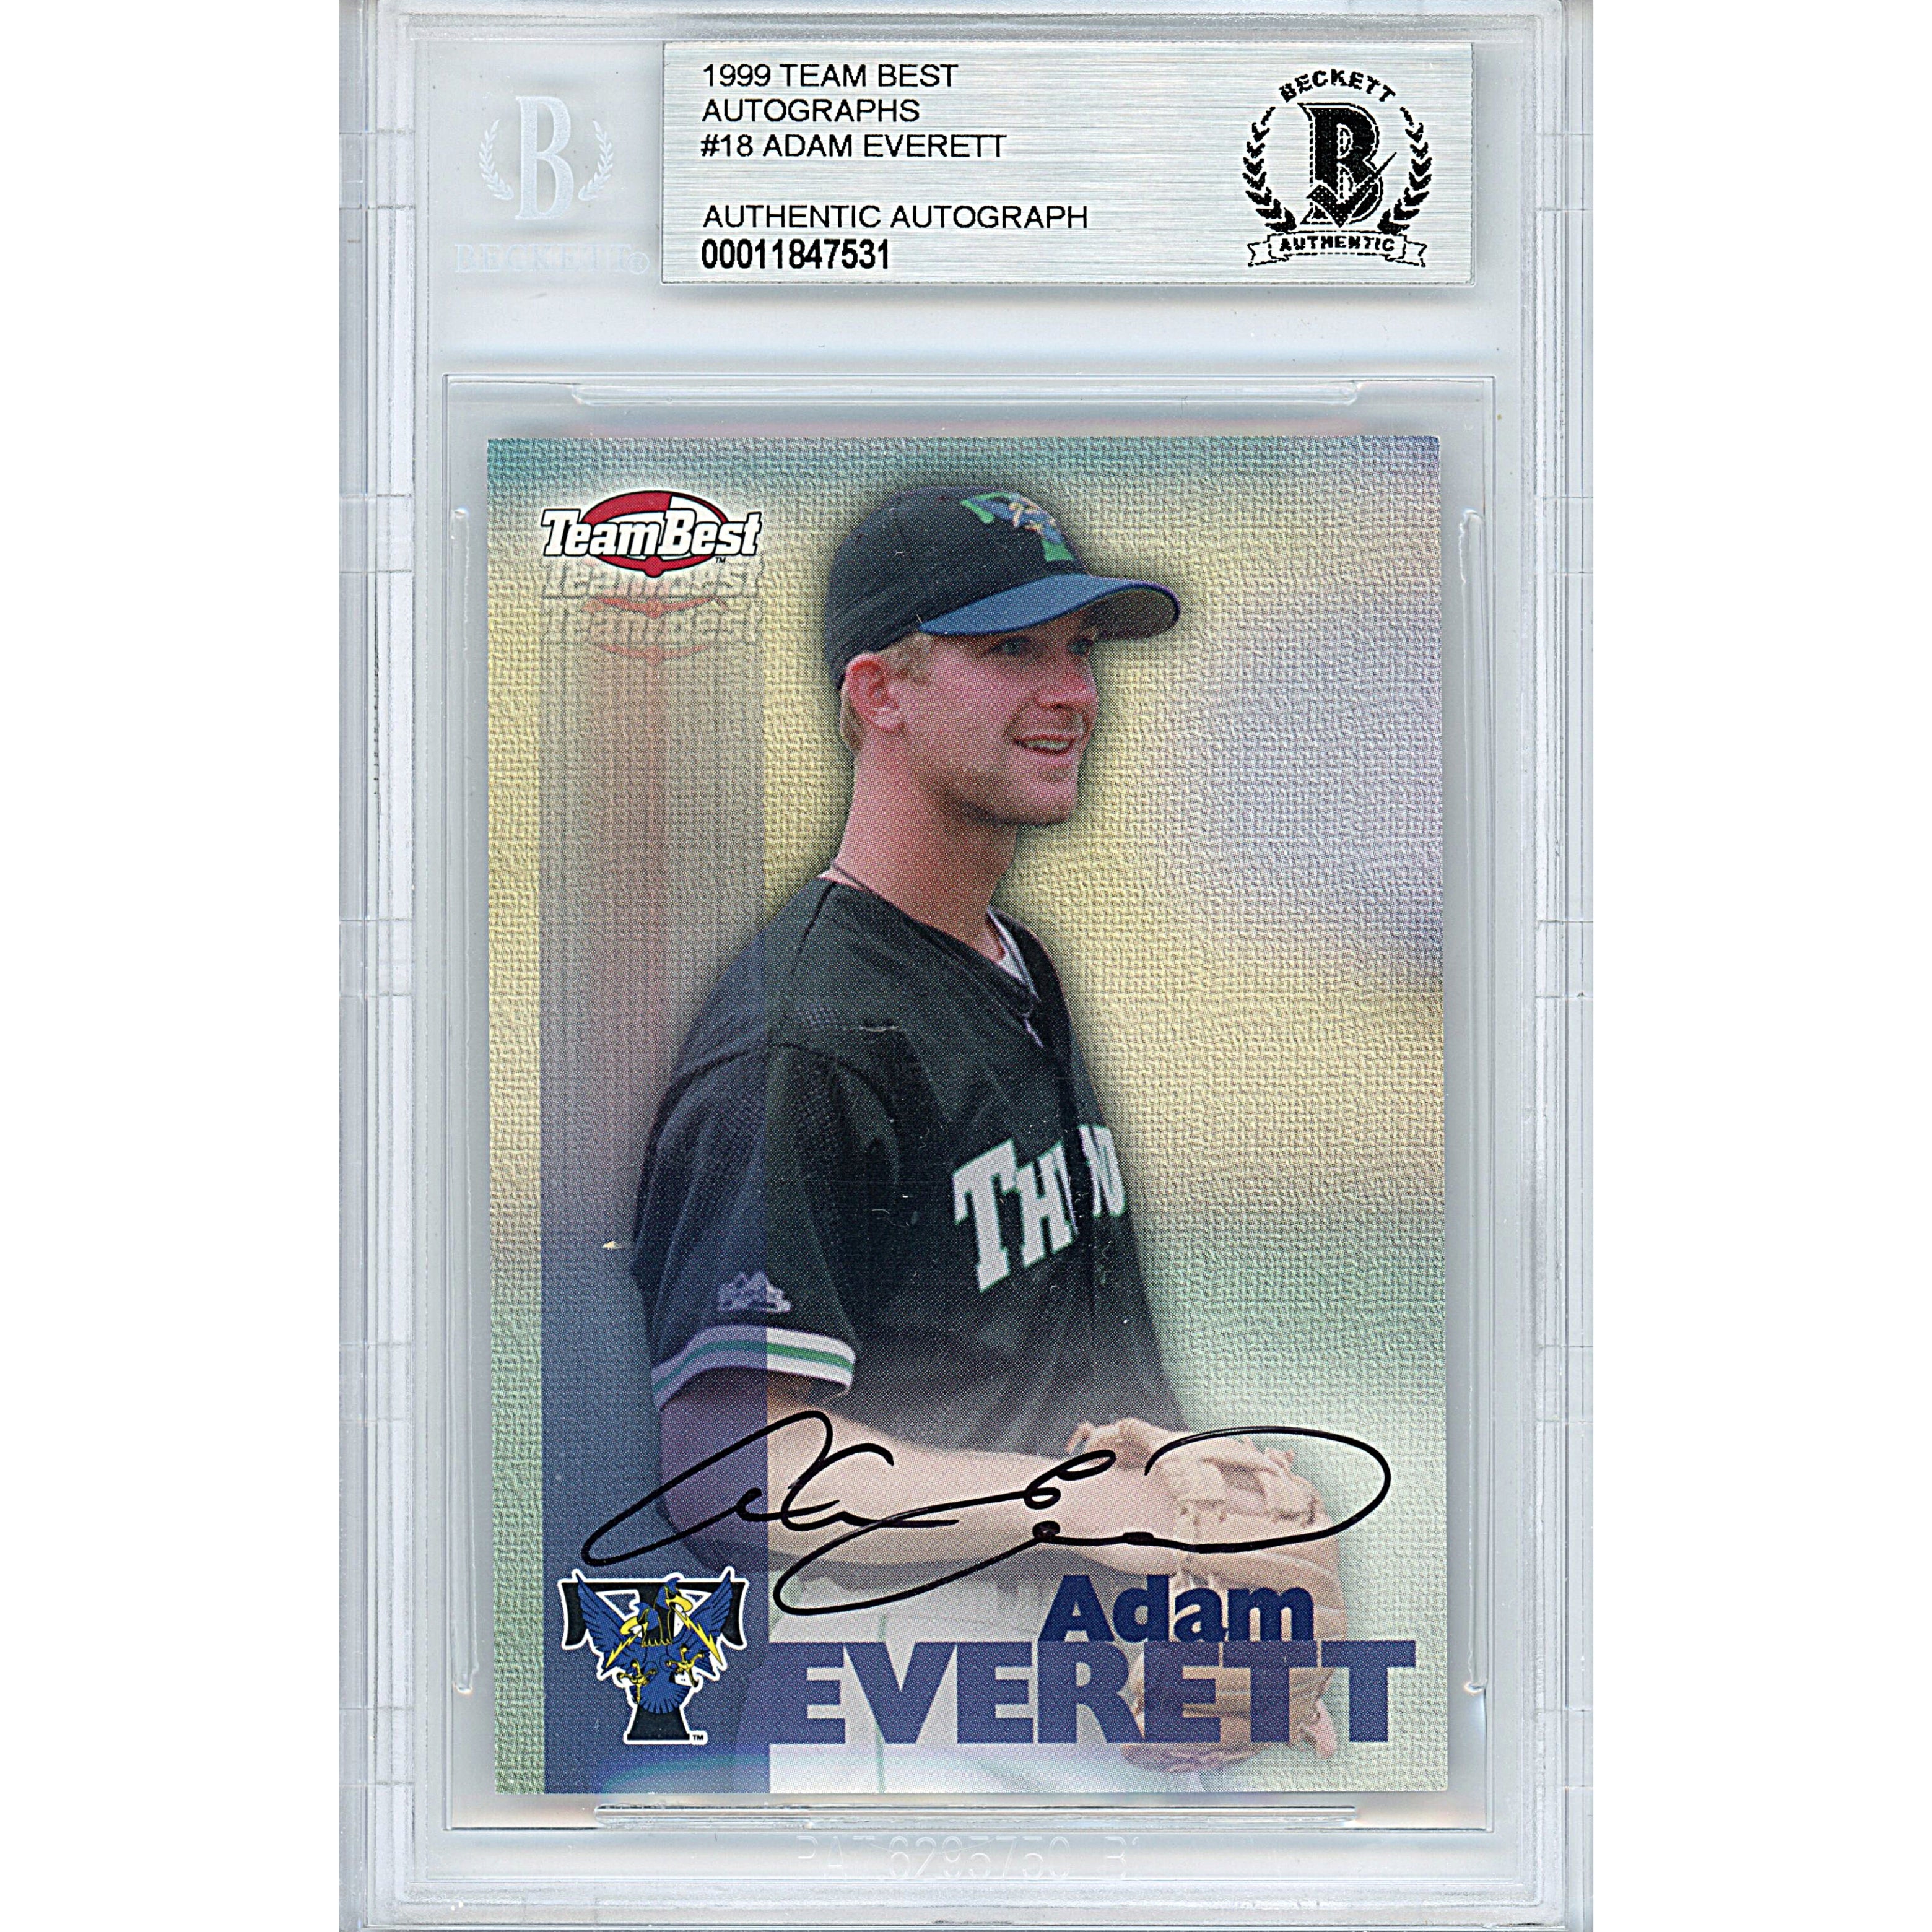 Adam Everett Signed 1999 Team Best Autographs Baseball Card